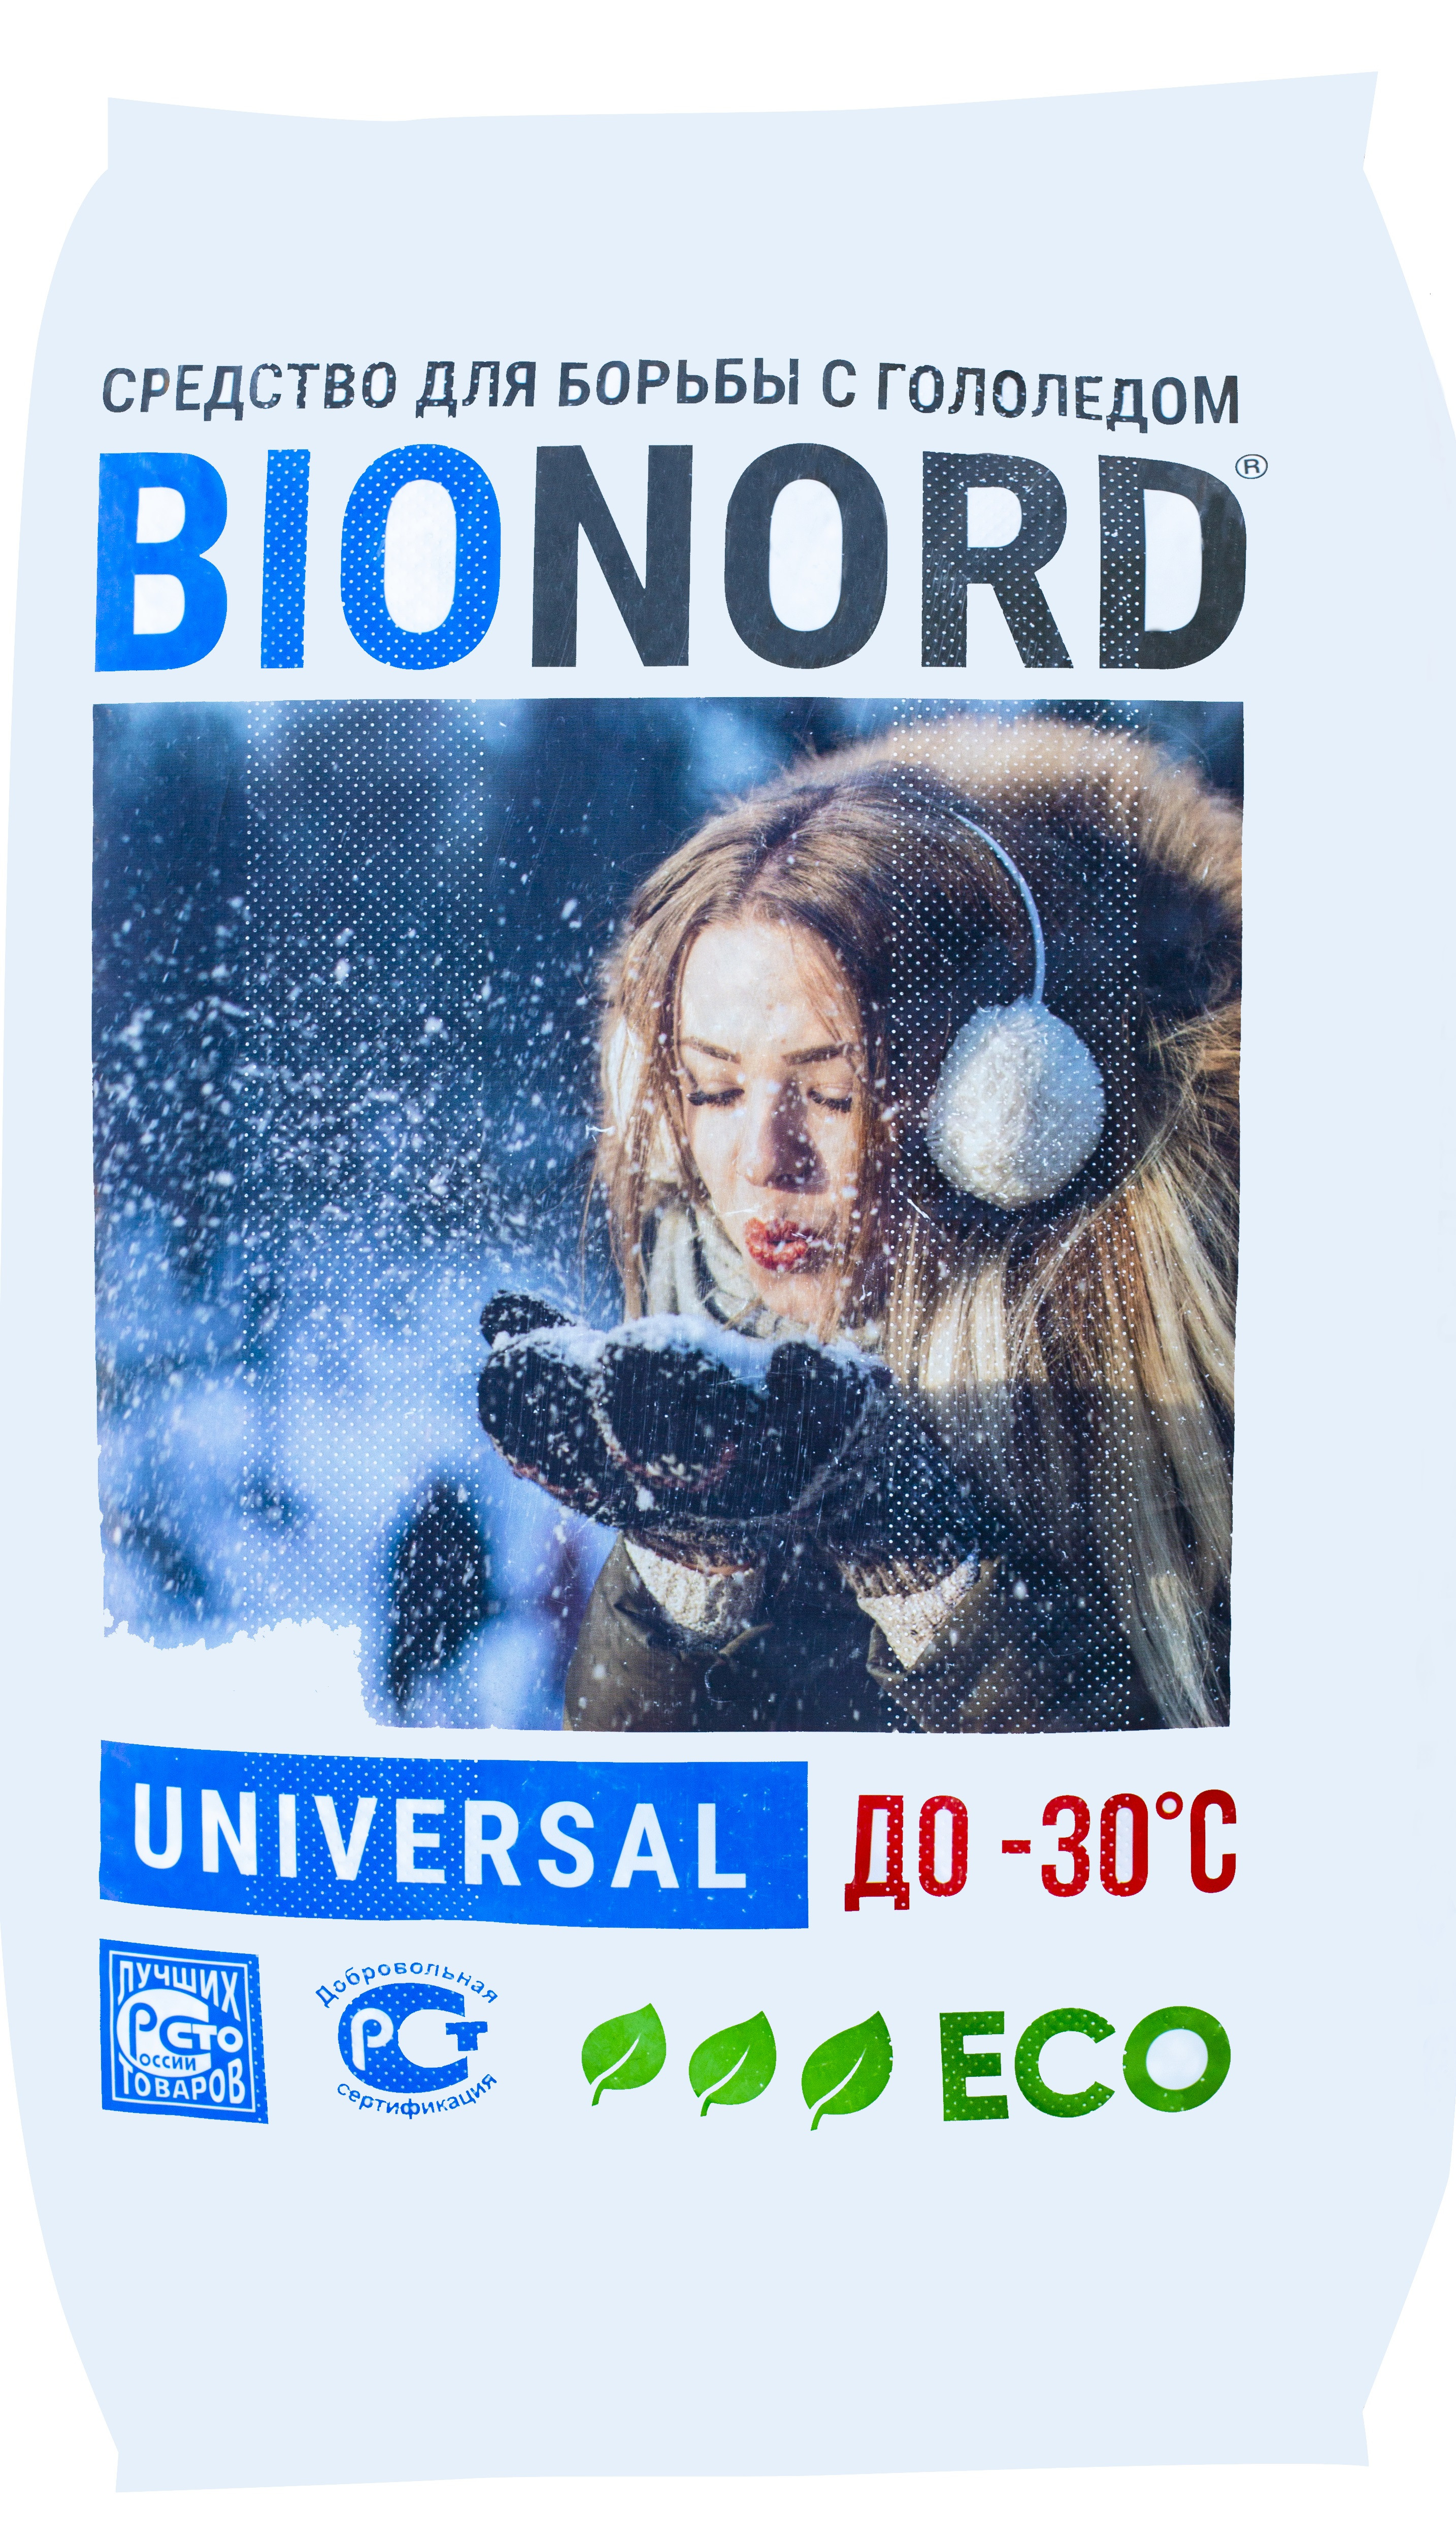 Реагент 23. Бионорд 23кг. Бионорд реагент. Бионорд универсал. Бионорд сертификат.